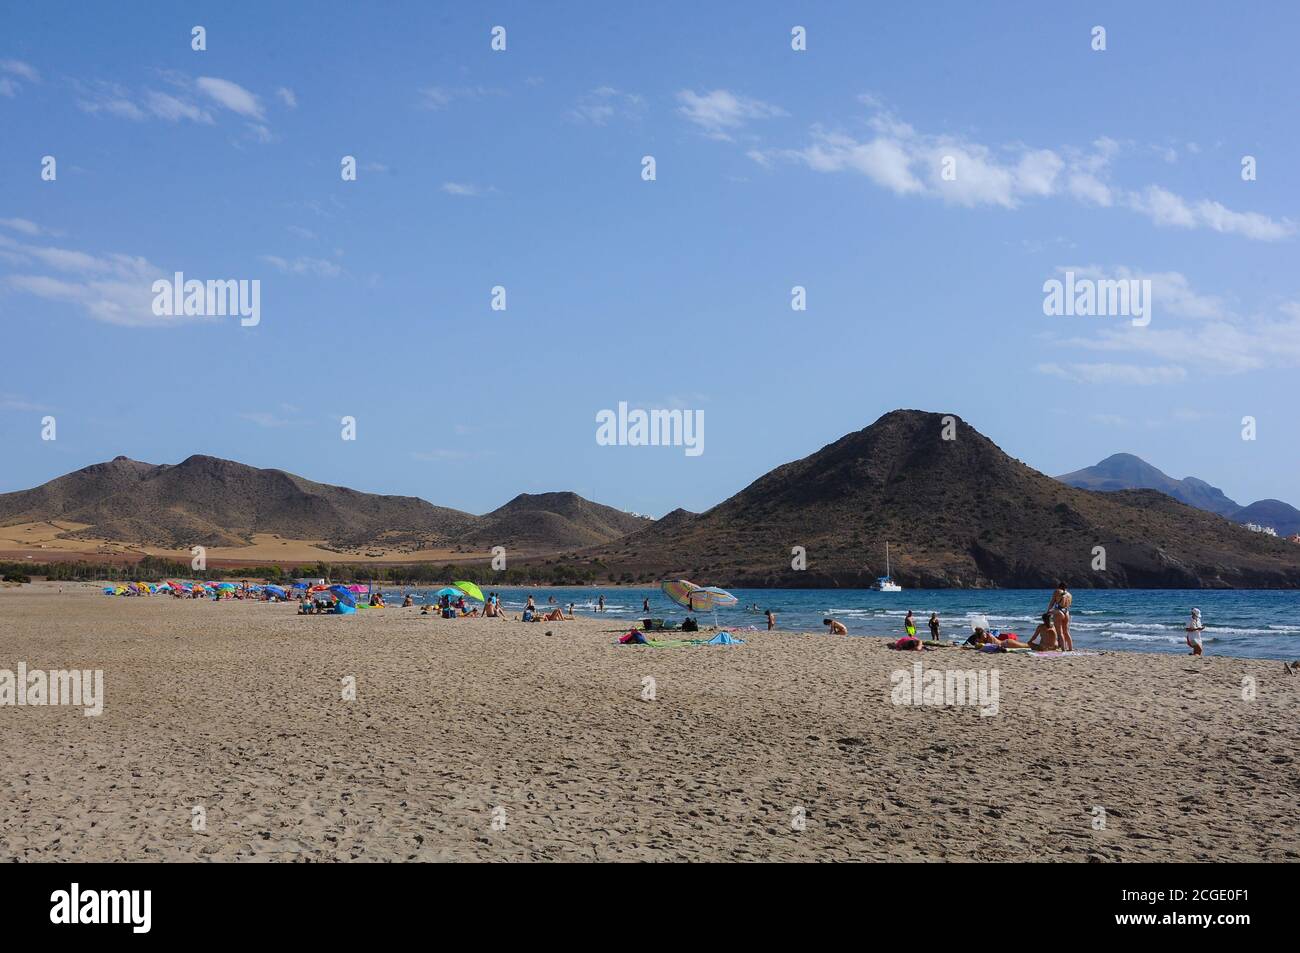 Playa de los Genoveses beach. Cabo de Gata Natural Park, Almeria, Spain Stock Photo